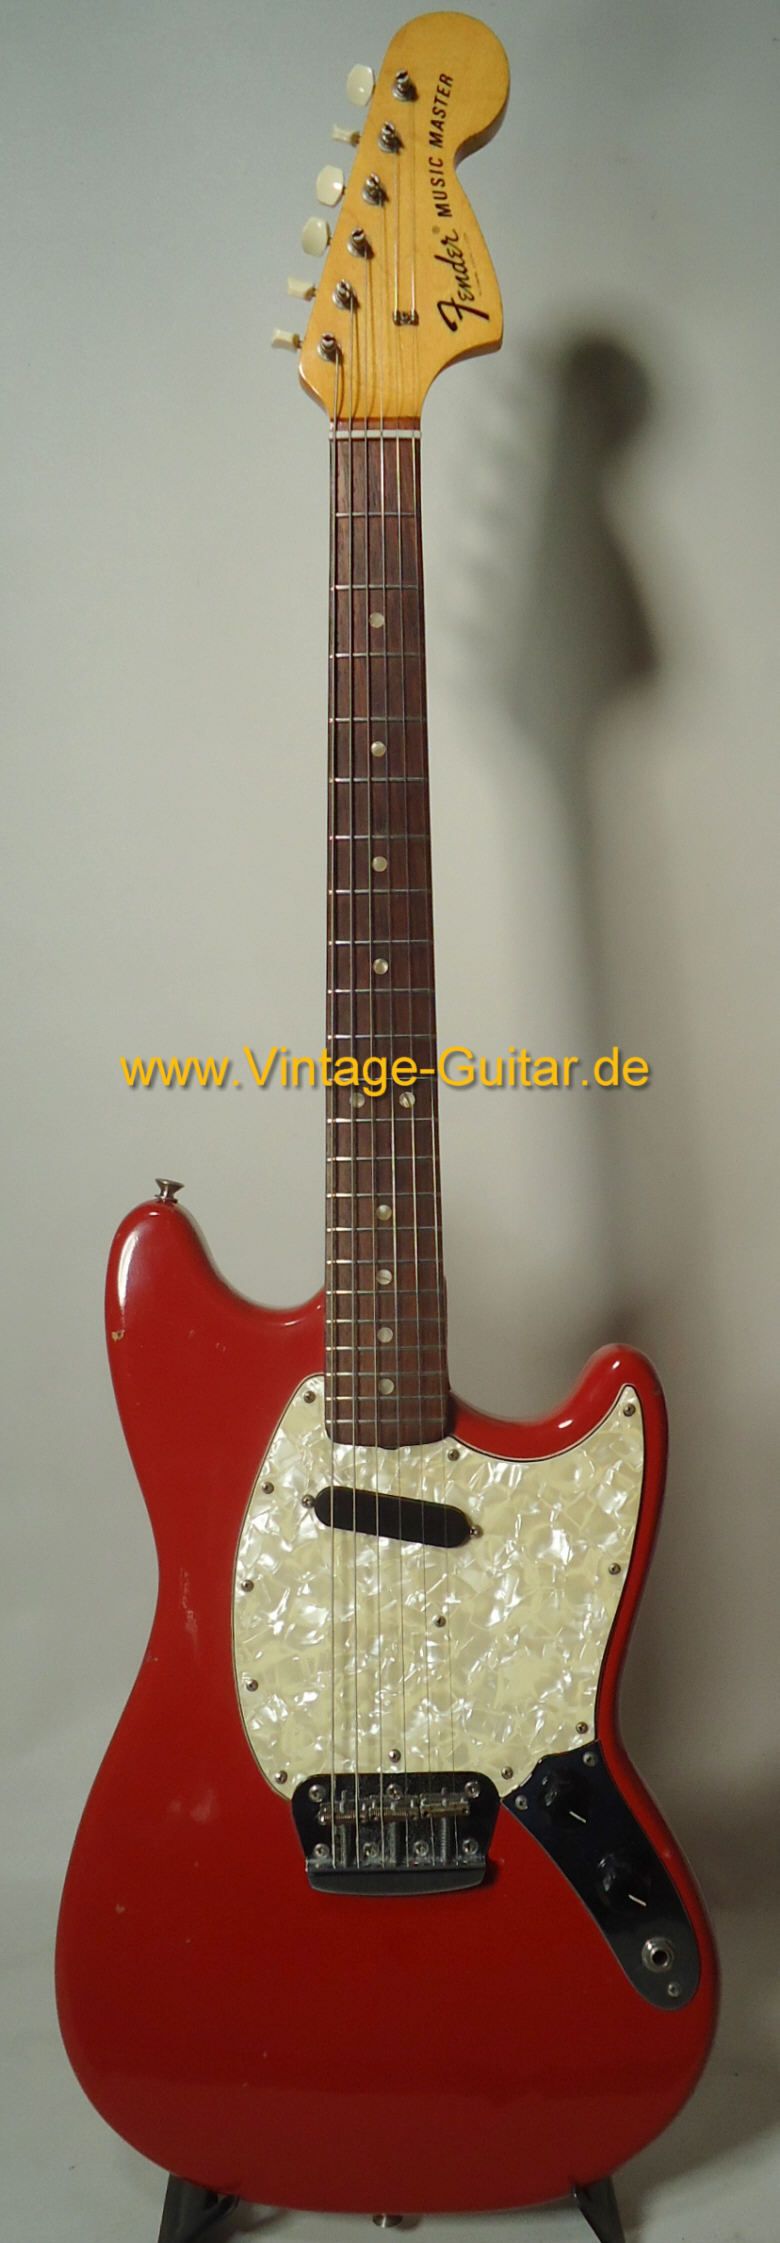 Fender Musicmaster 1972 a.jpg